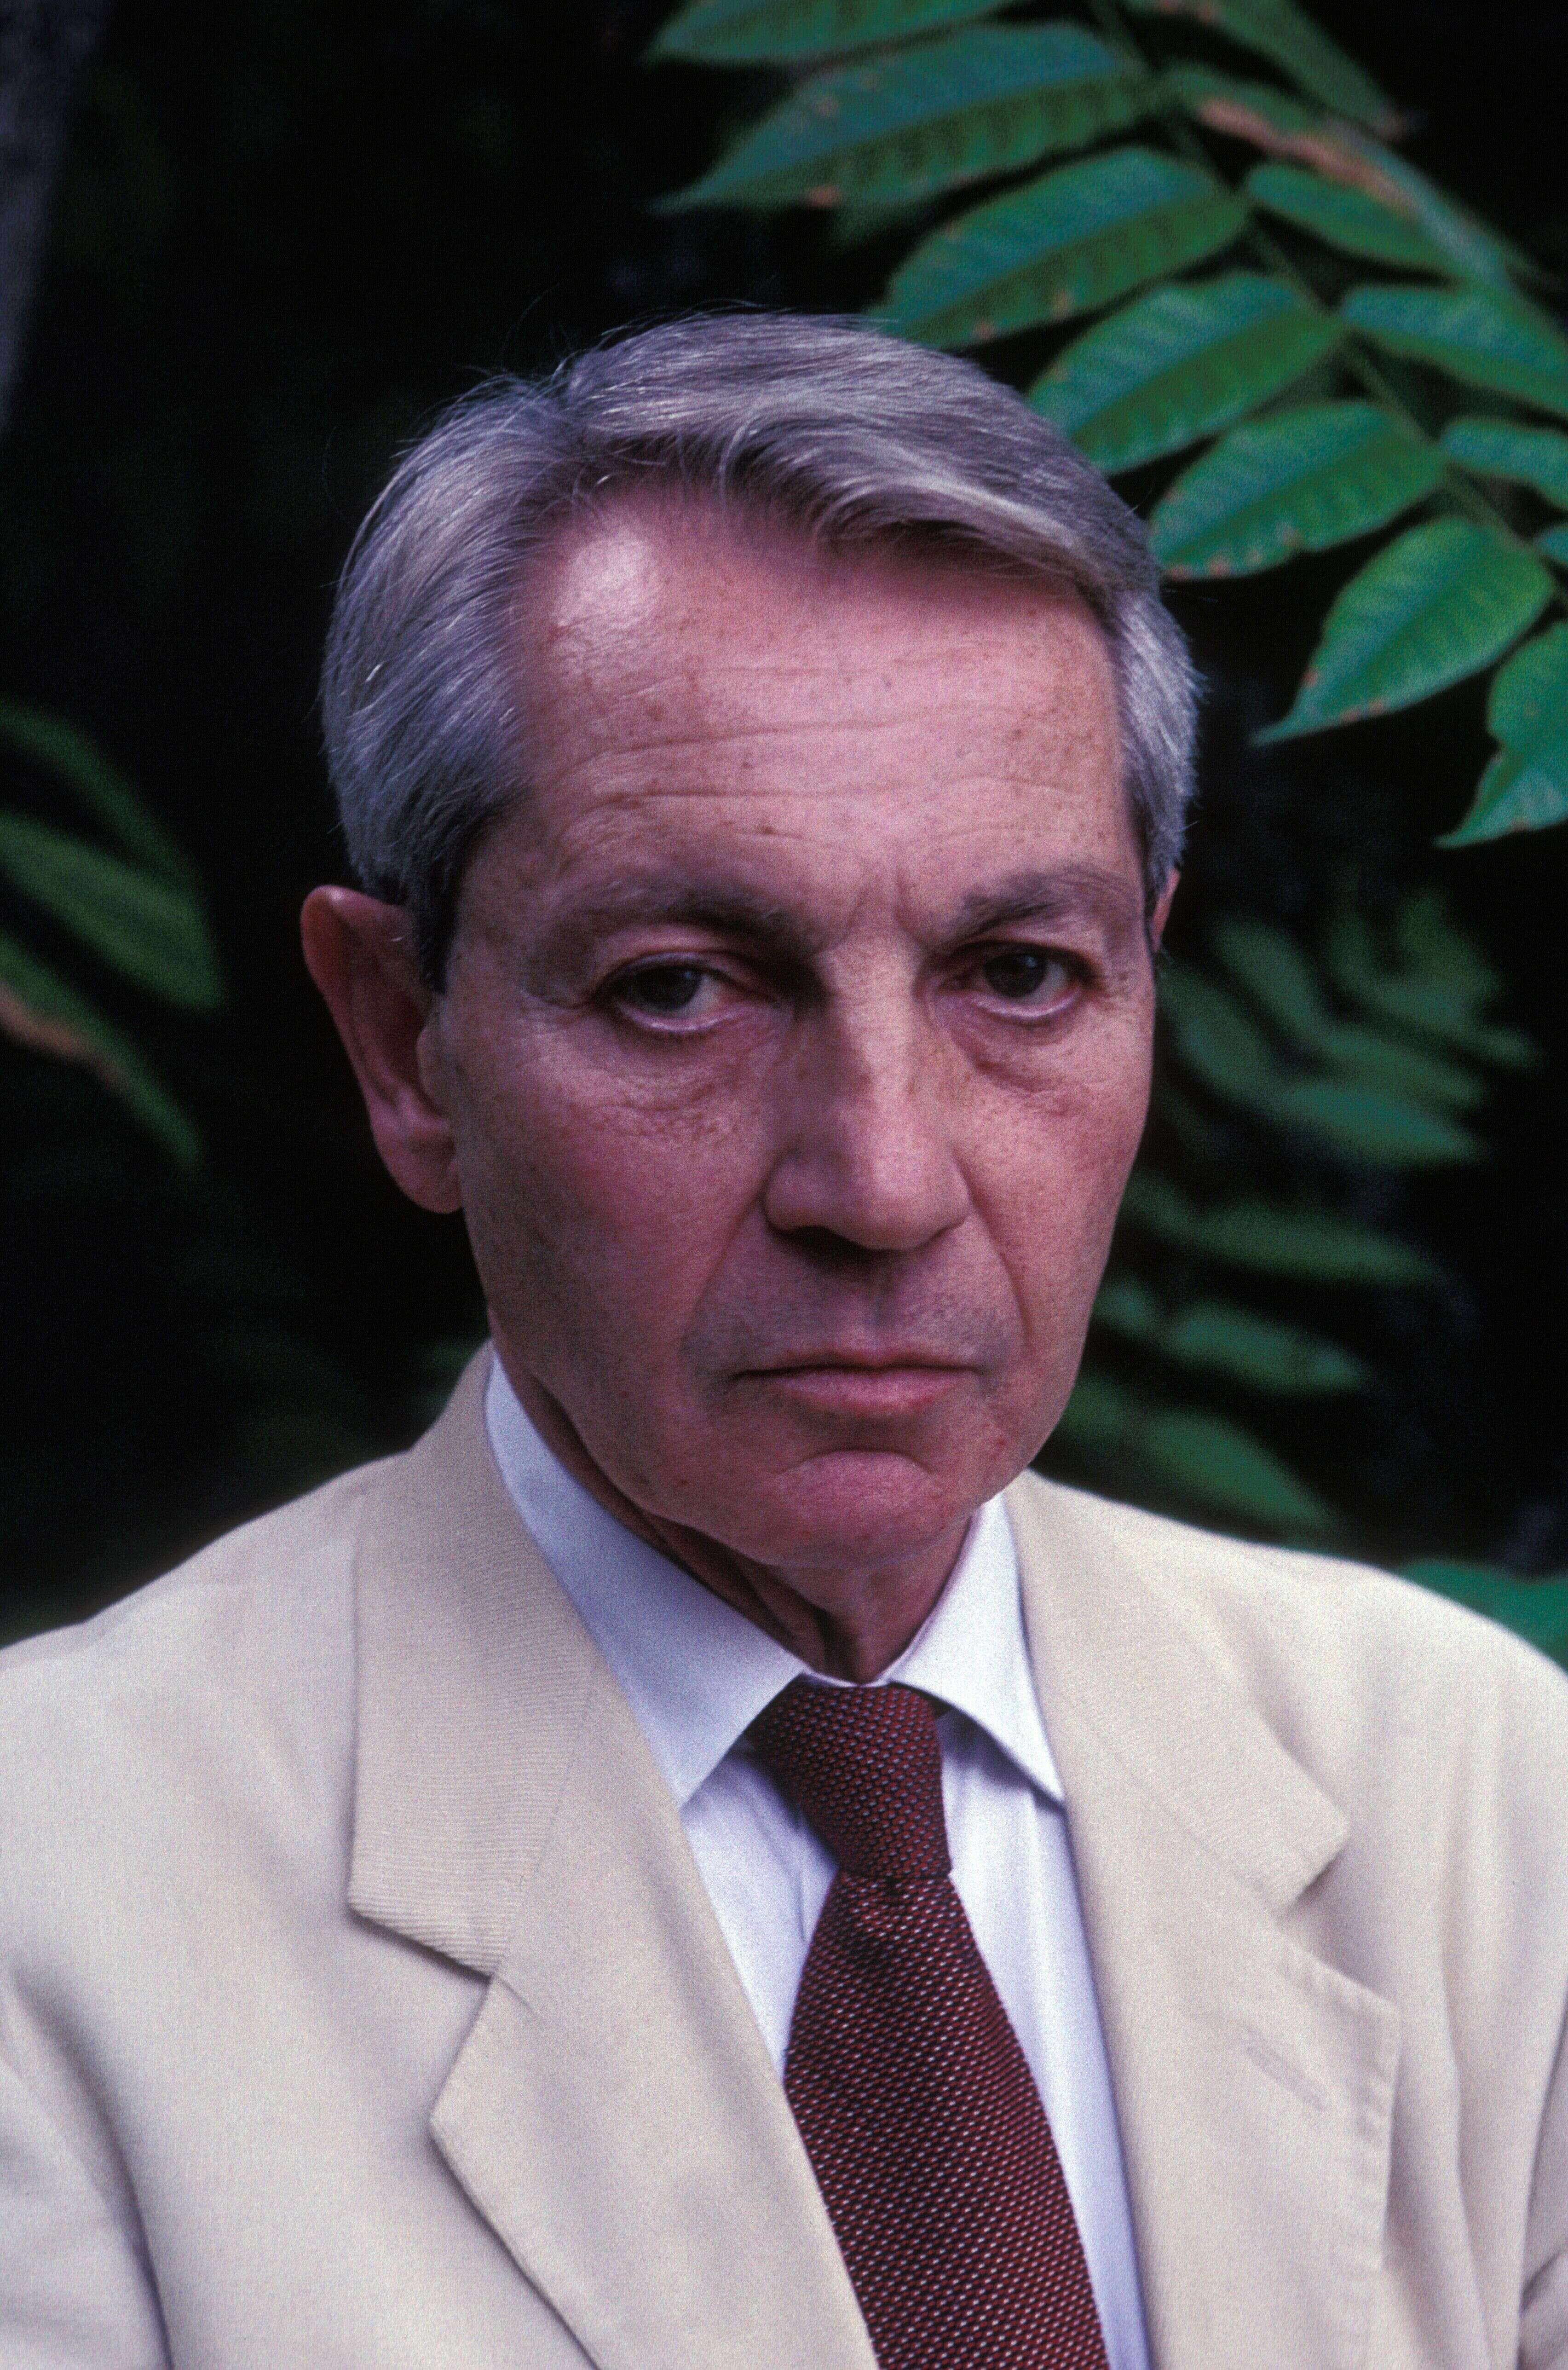 Le journaliste François Debré photographié en septembre 1998 (illustration)